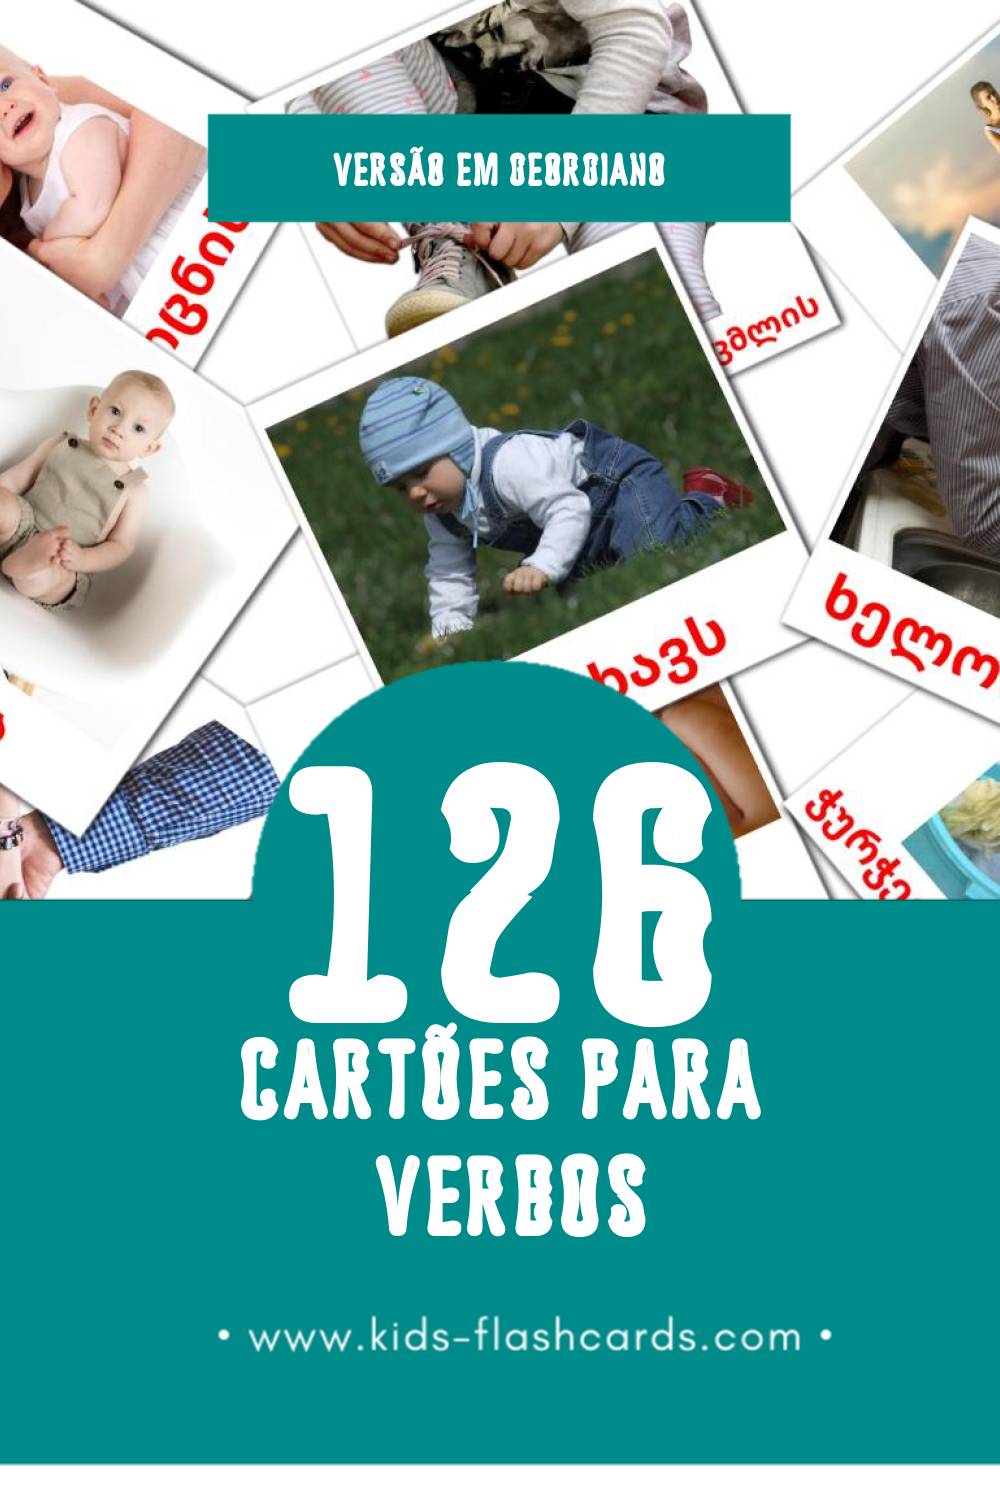 Flashcards de ზმნები Visuais para Toddlers (126 cartões em Georgiano)